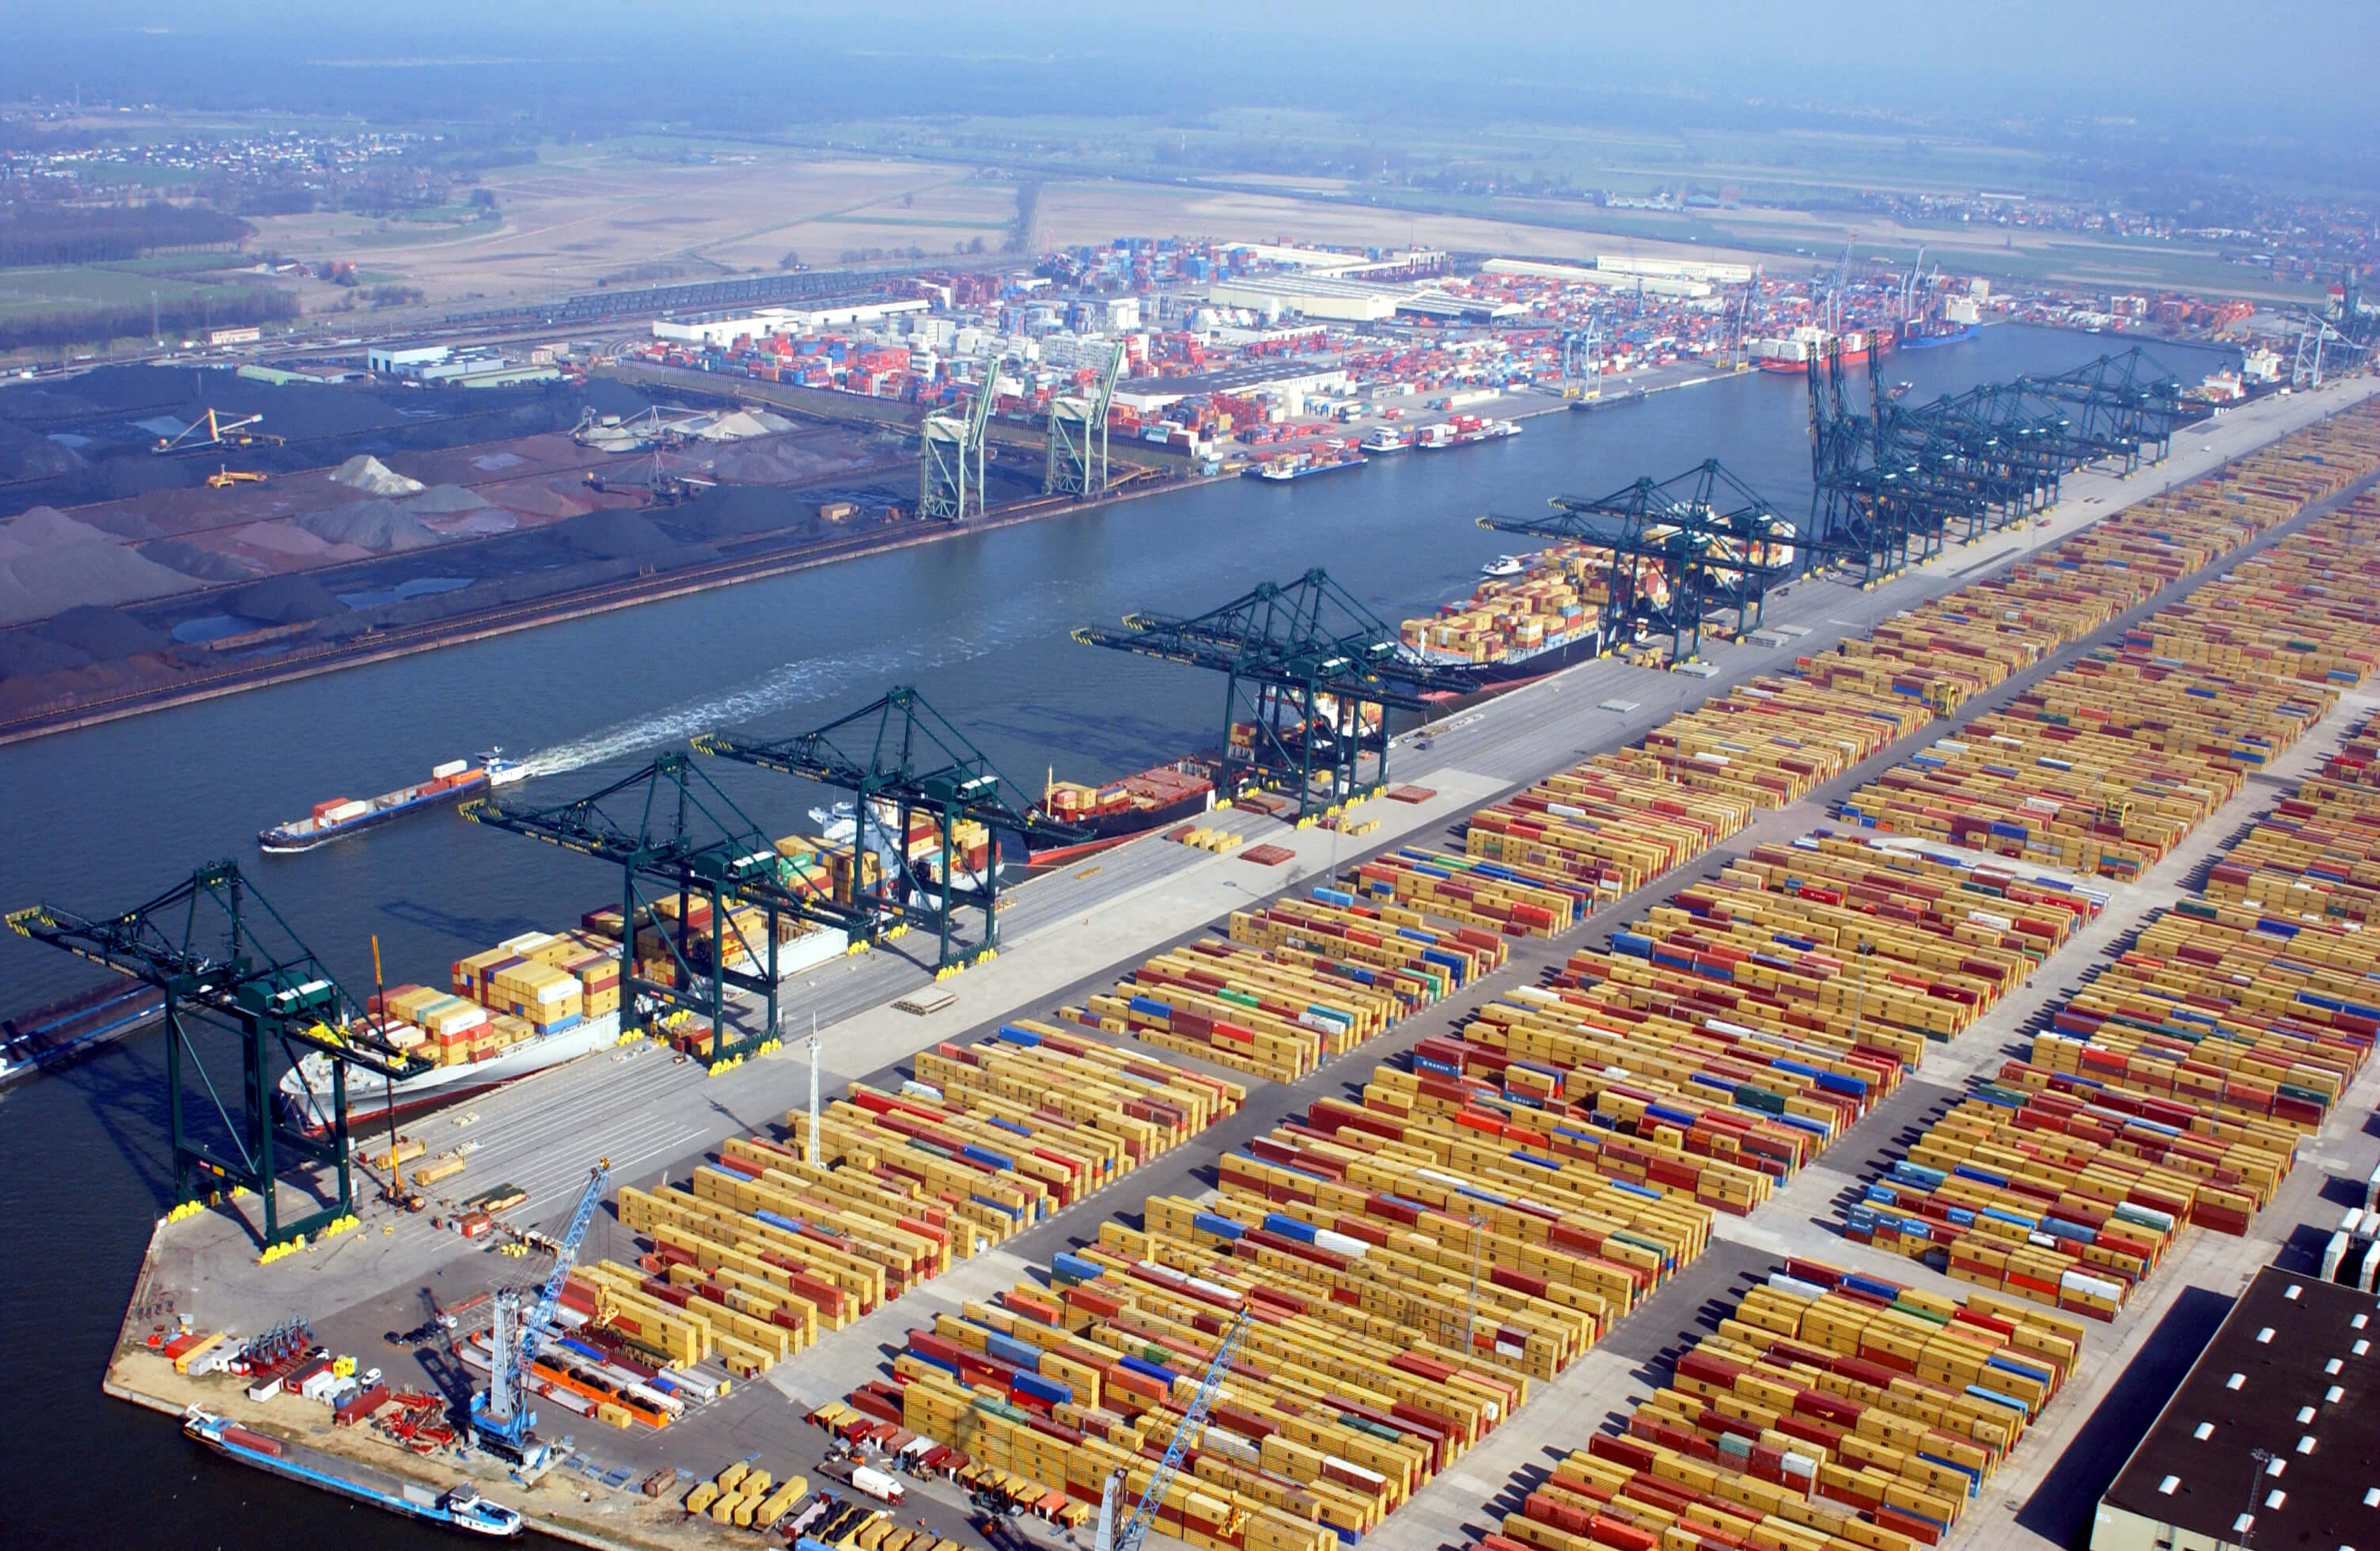 Port of Antwerp (BEANR) | An Overview